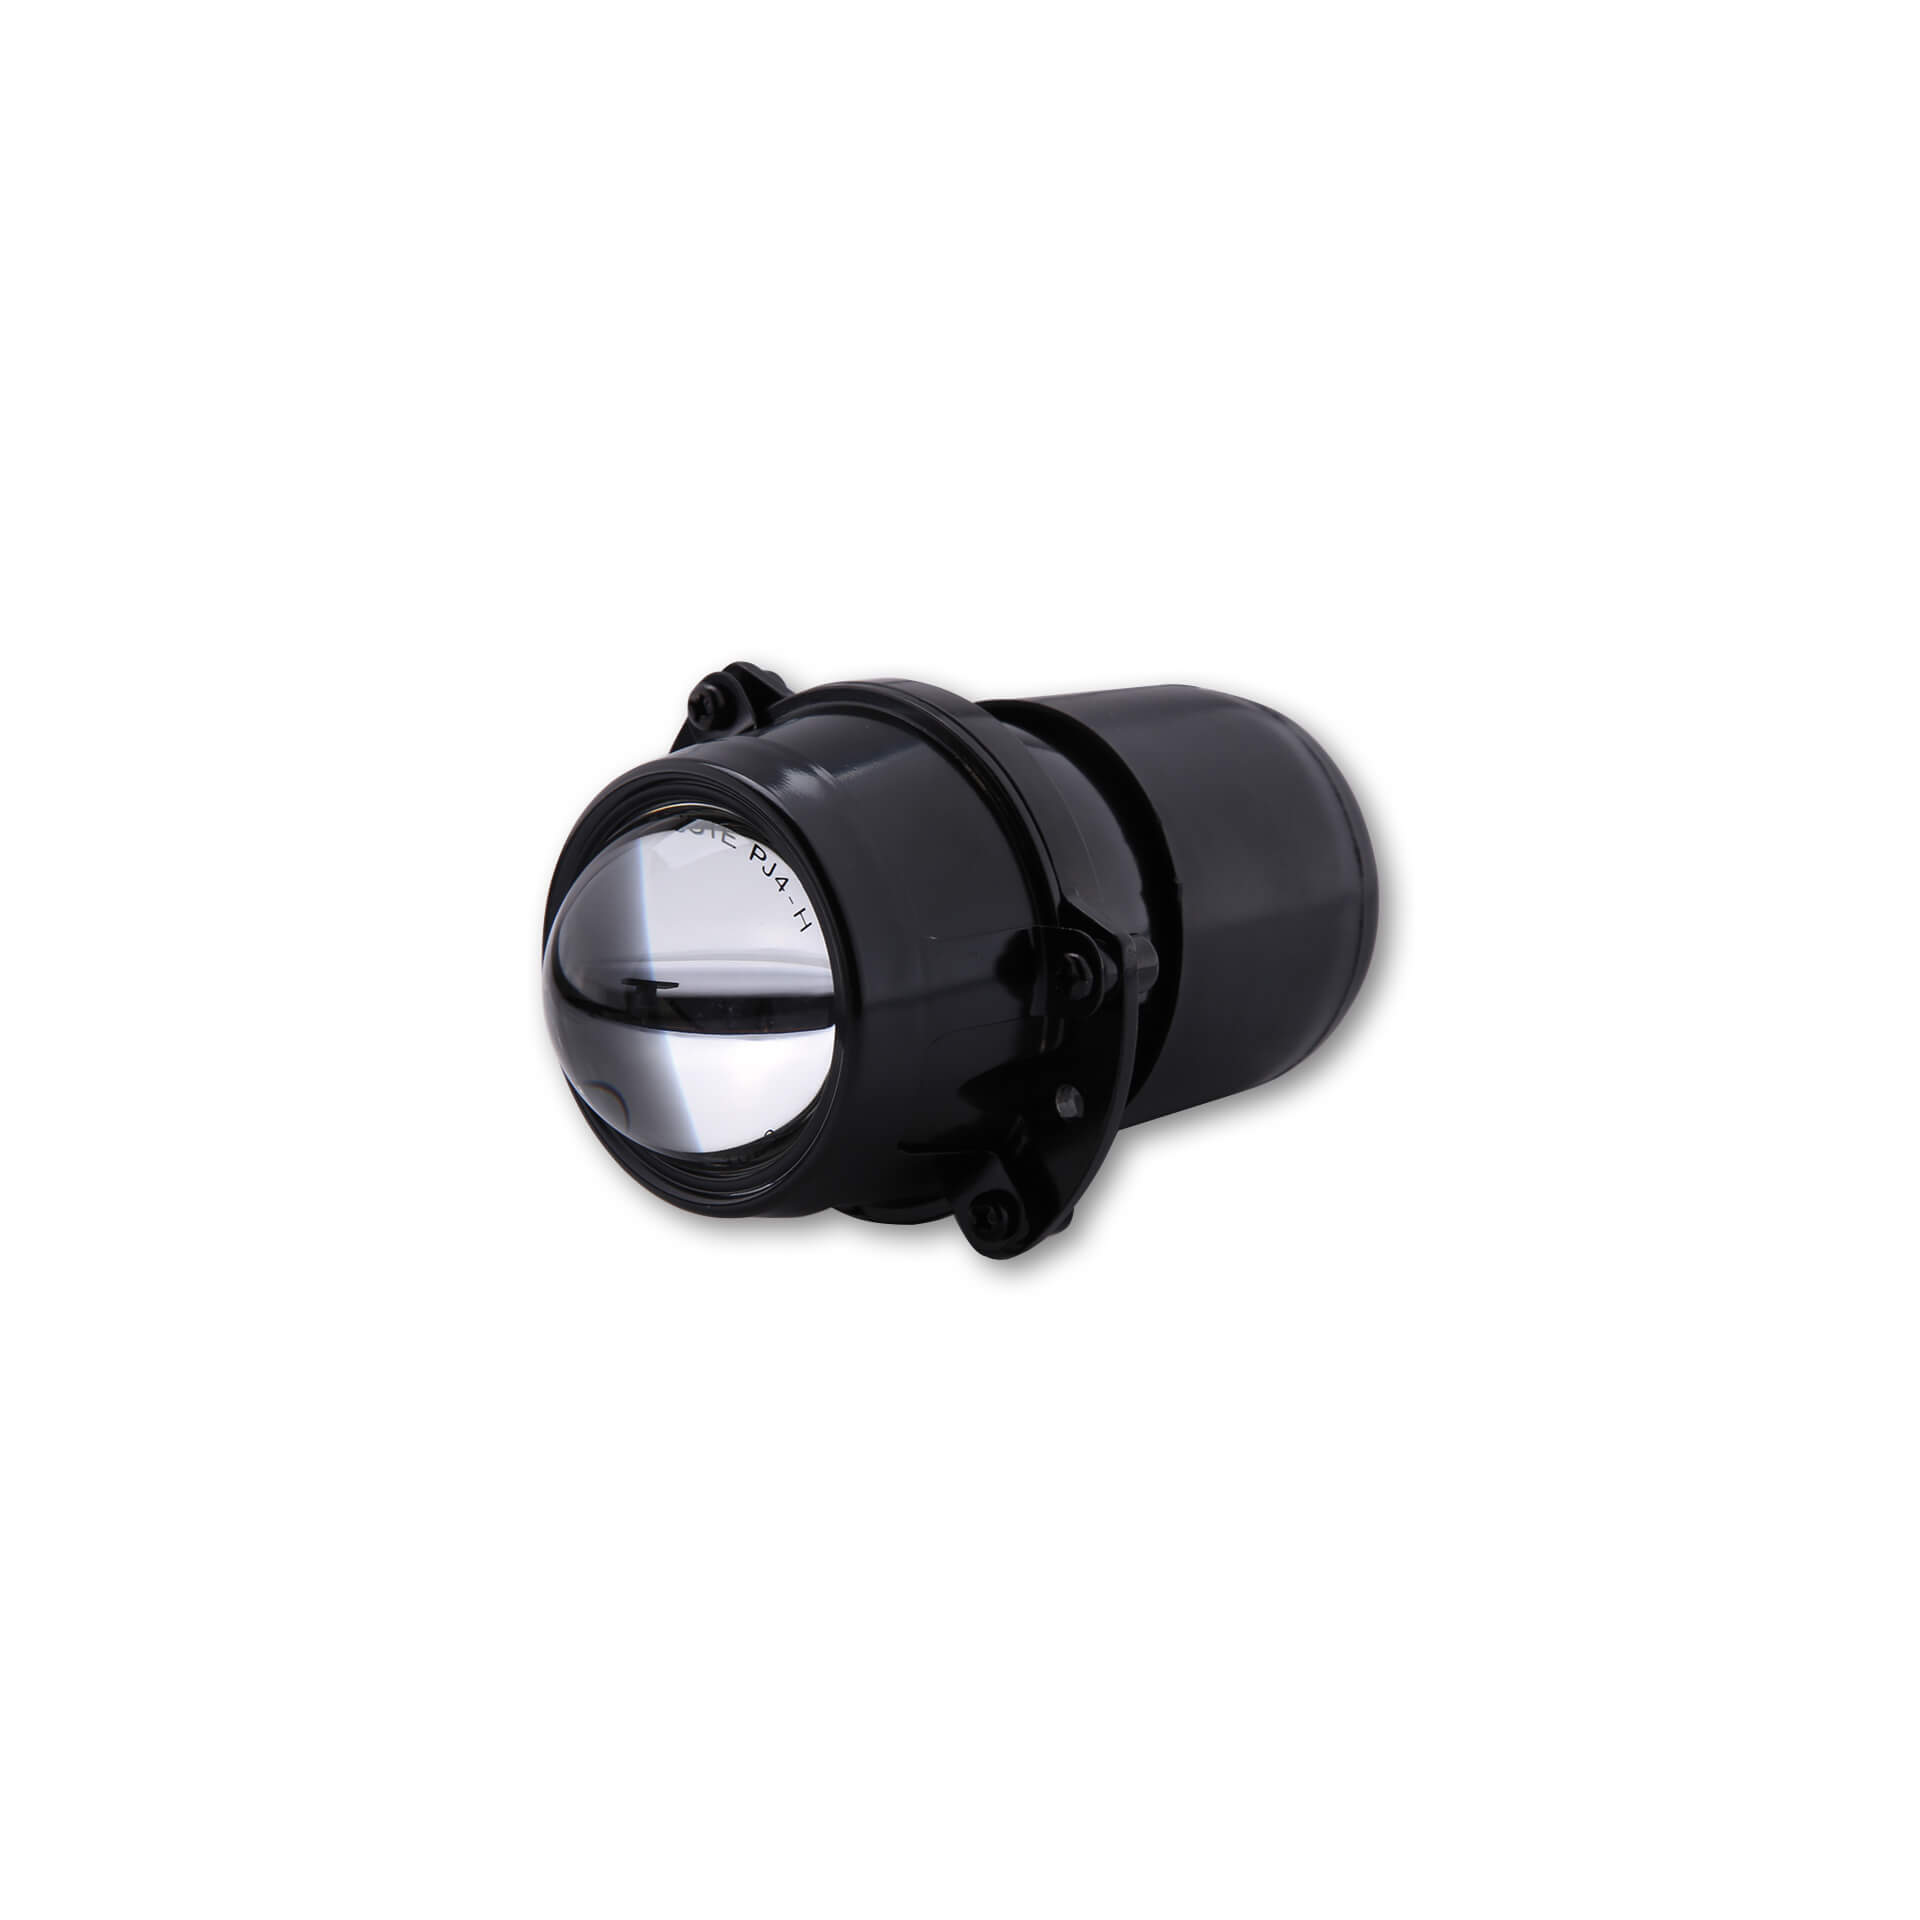 shin_yo Reflektor elipsoidalny 50 mm z gumową osłoną, wysokie światło, H1, 12V/55 Watt